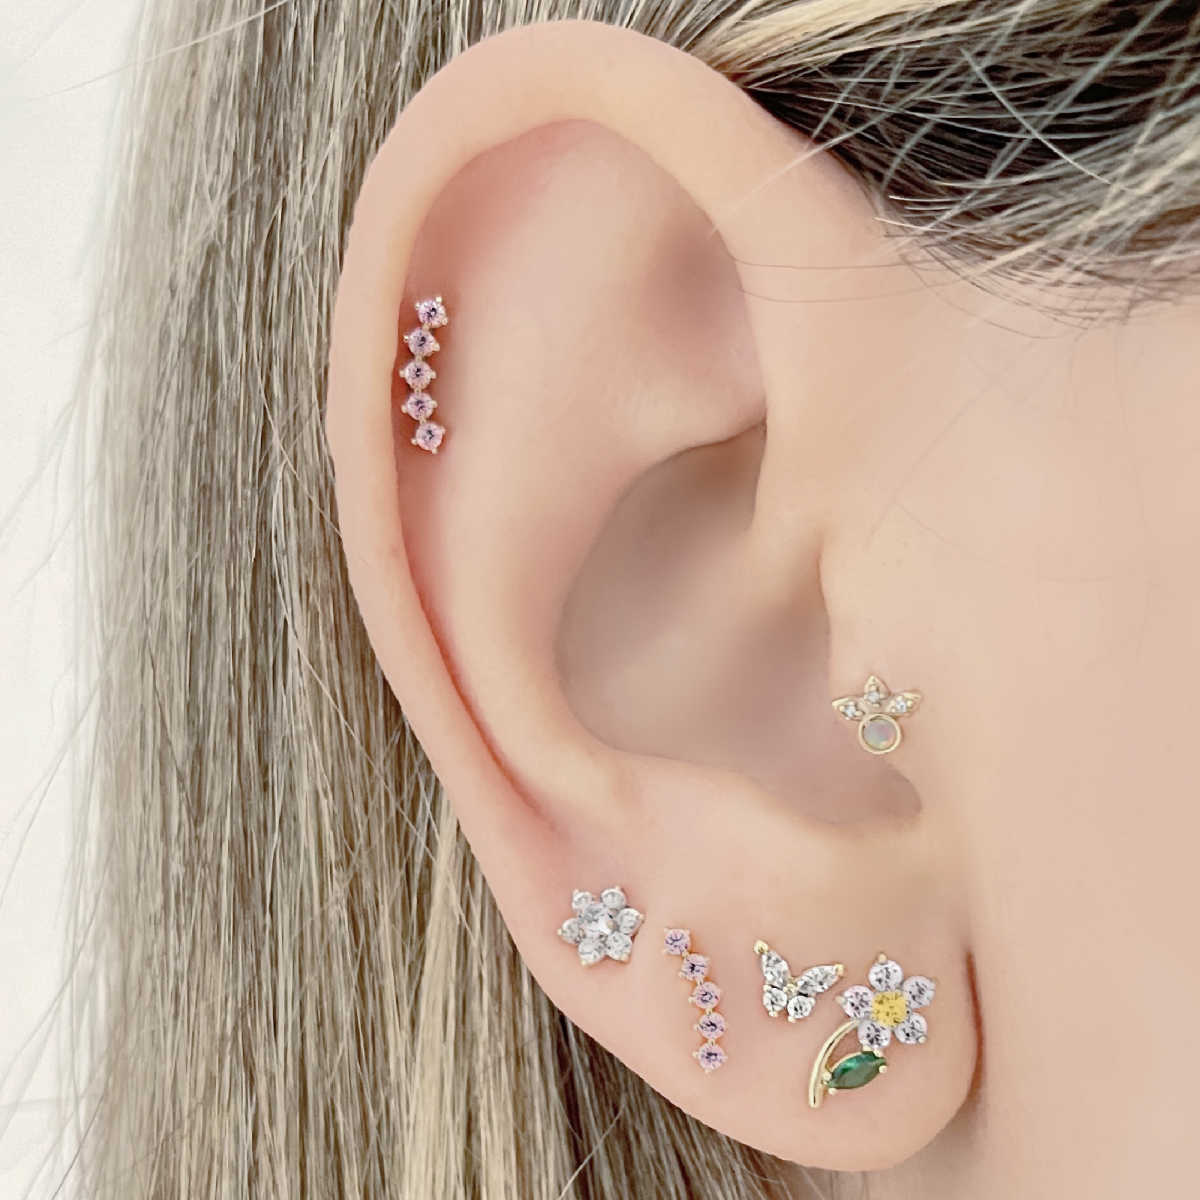 Diamond Flower Earrings on Model, 14K Gold & Gemstone Studs, Two of Most Fine Jewelry